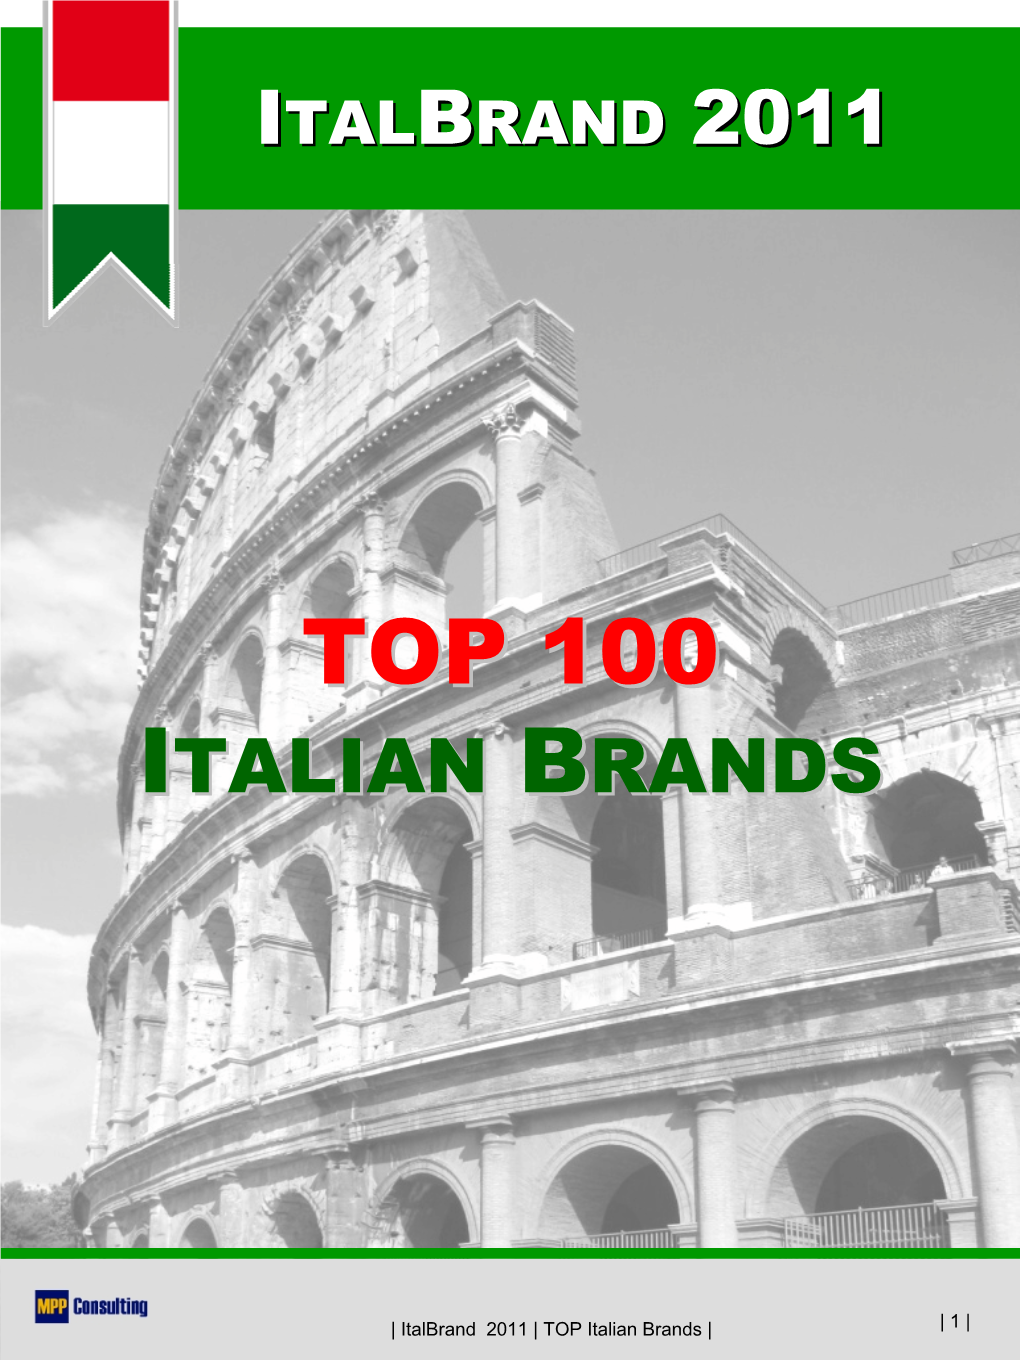 Top 100 Italian Brands